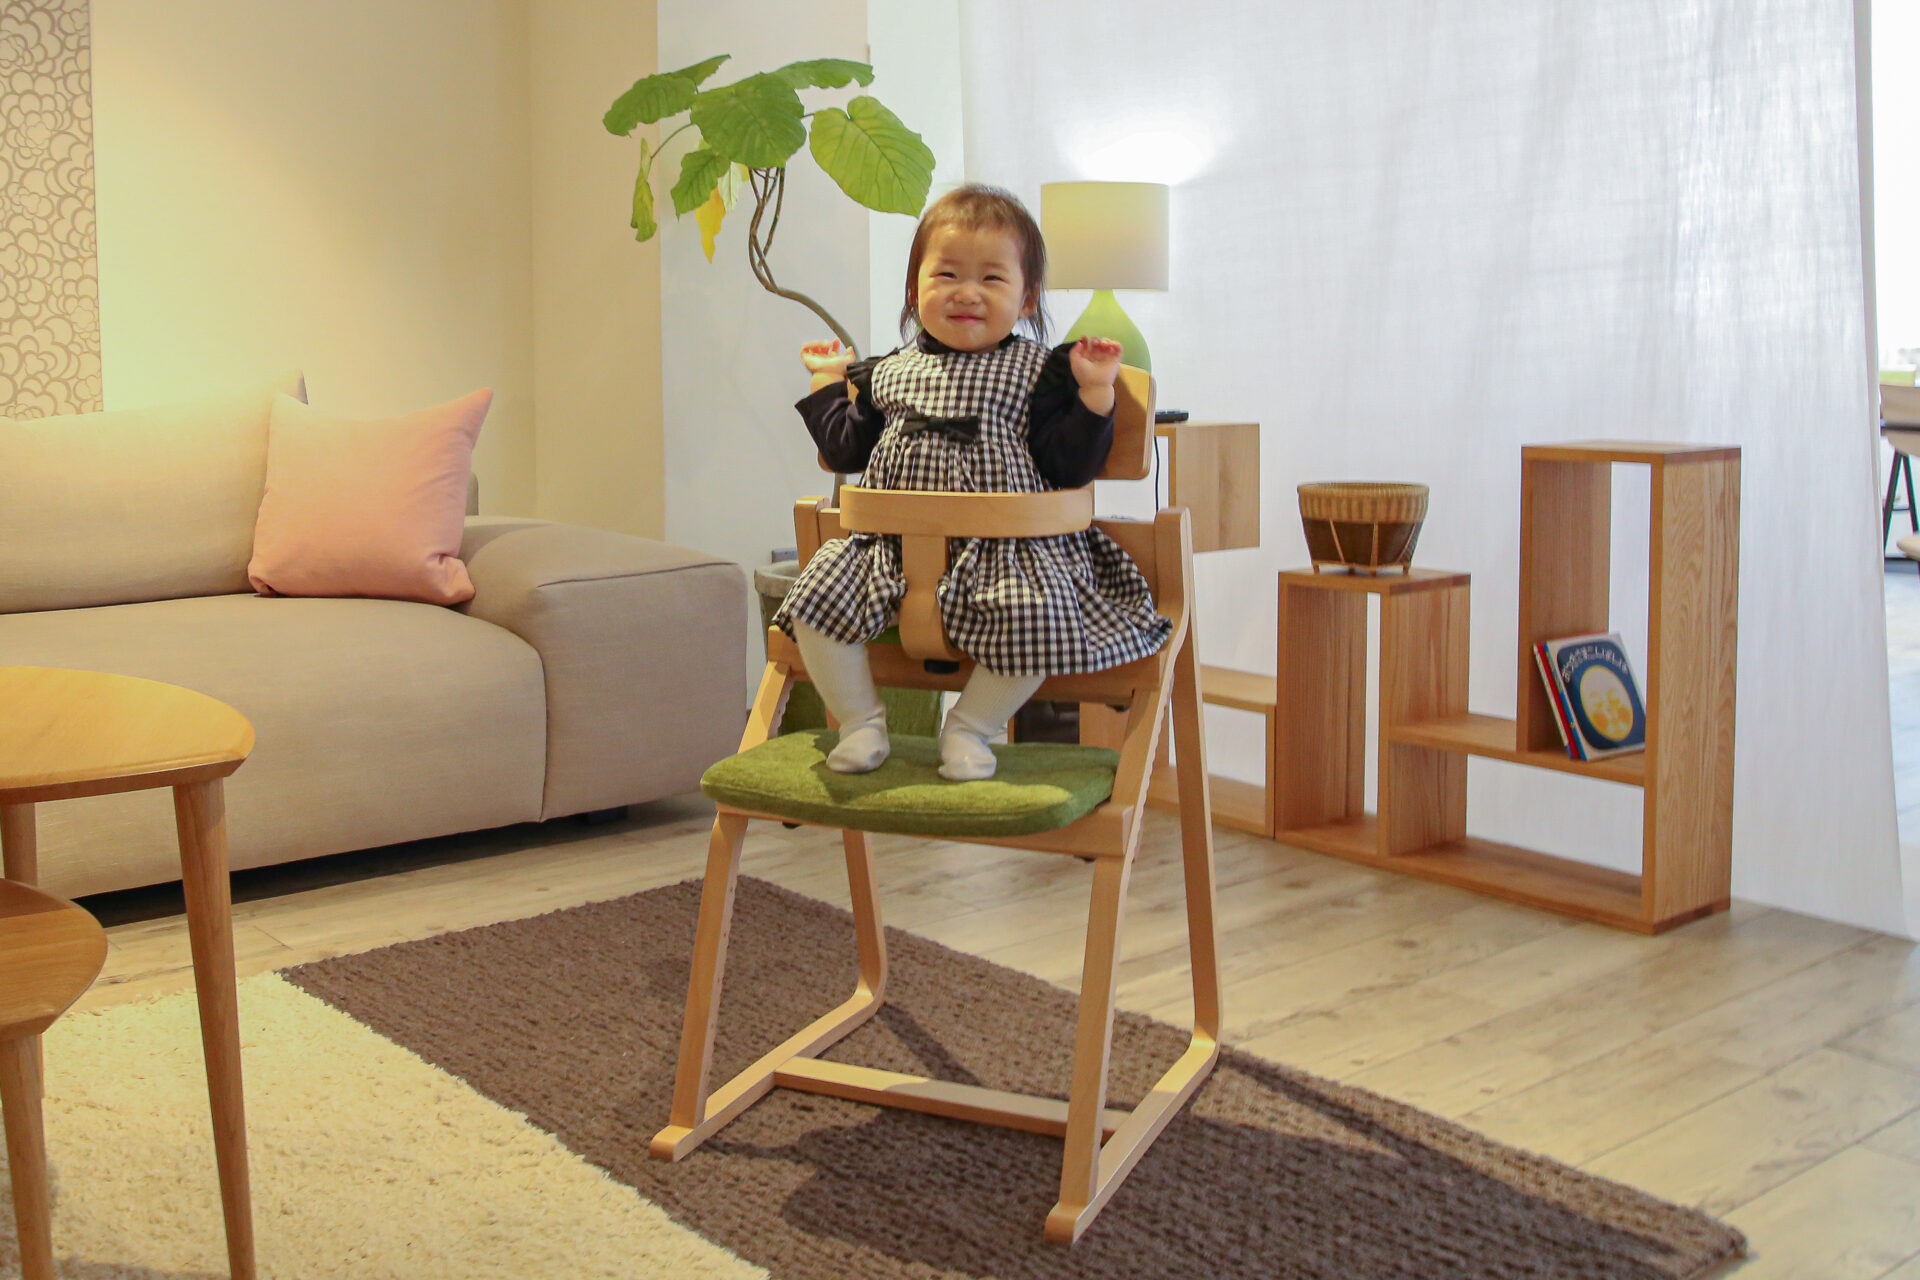 アップライトチェアは、姿勢について研究と改良を重ねた姿勢を守る子供椅子